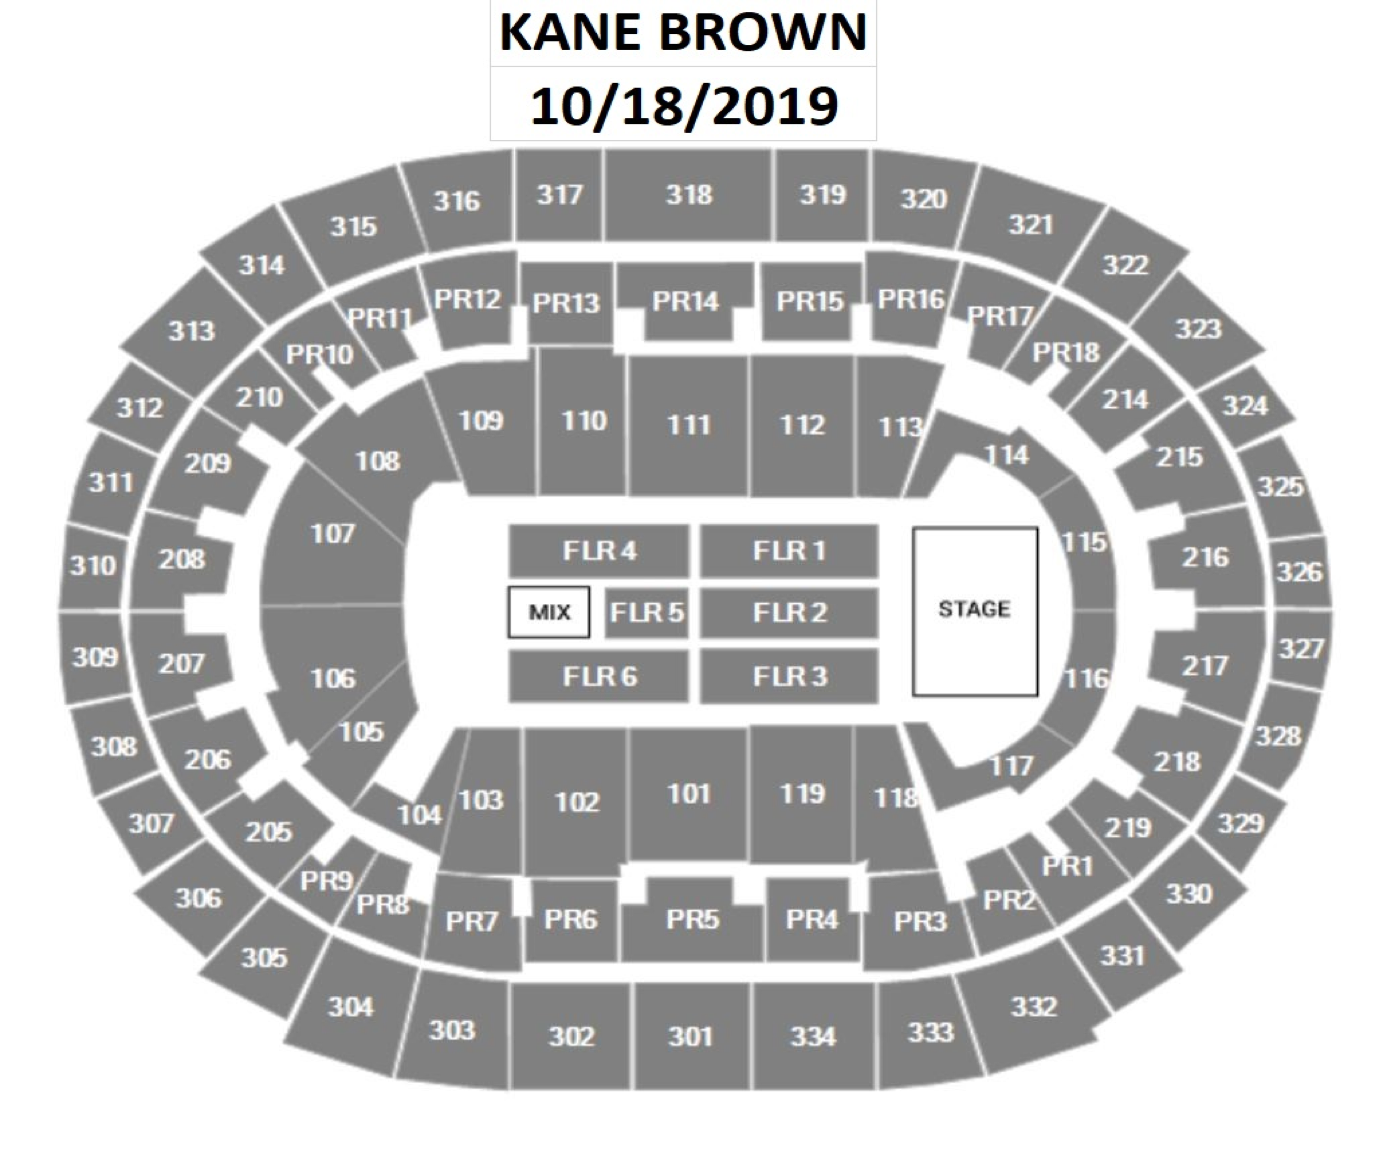 Staples Center Concert Floor Seating Chart